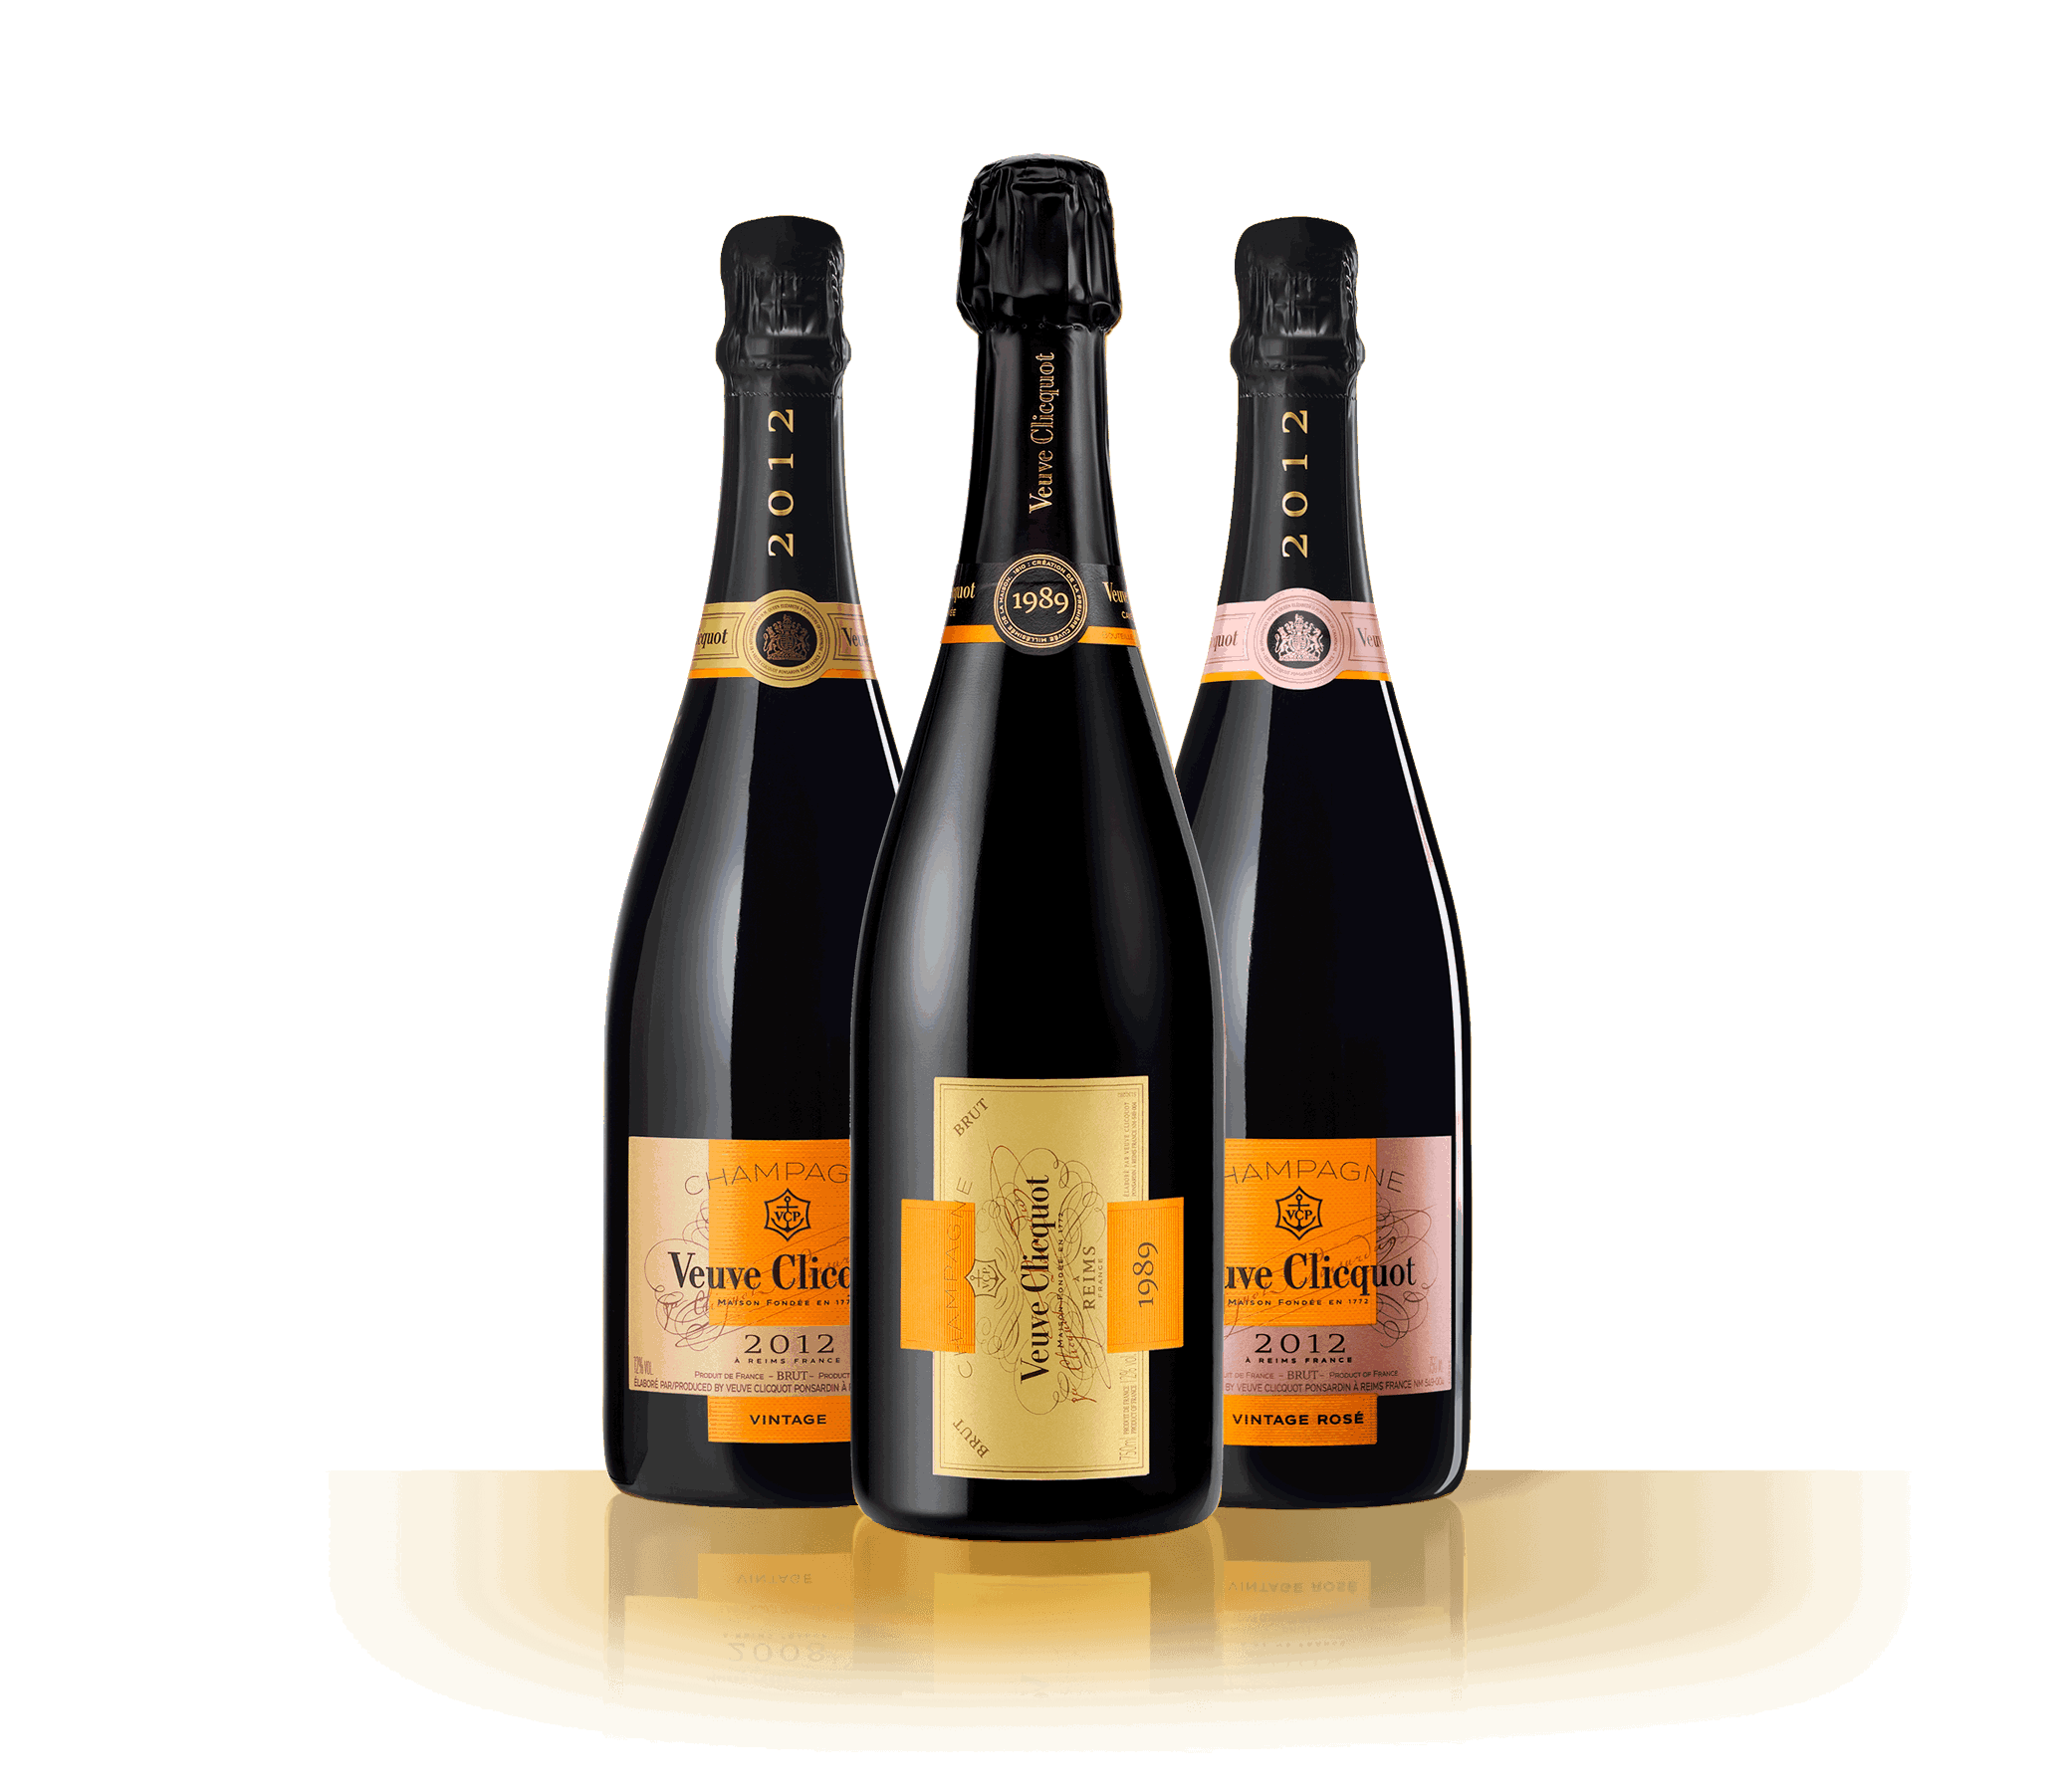 Bottles Veuve Clicquot Champagne Vintage 